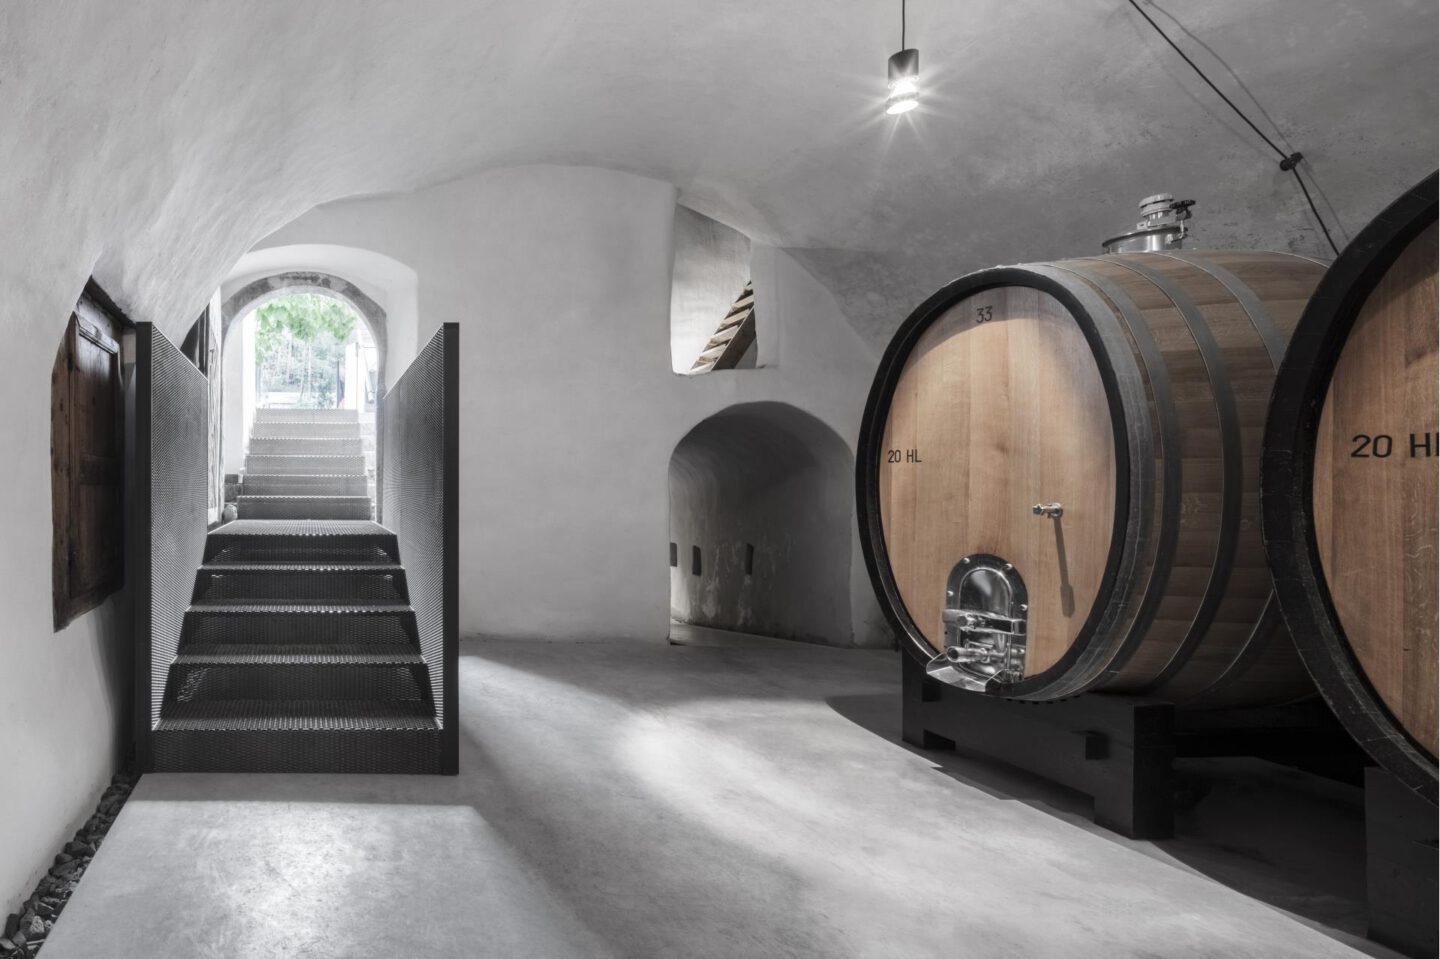 Weingut Pacherhof, Eisacktal, Südtirol Wein, Gentlemens Journey